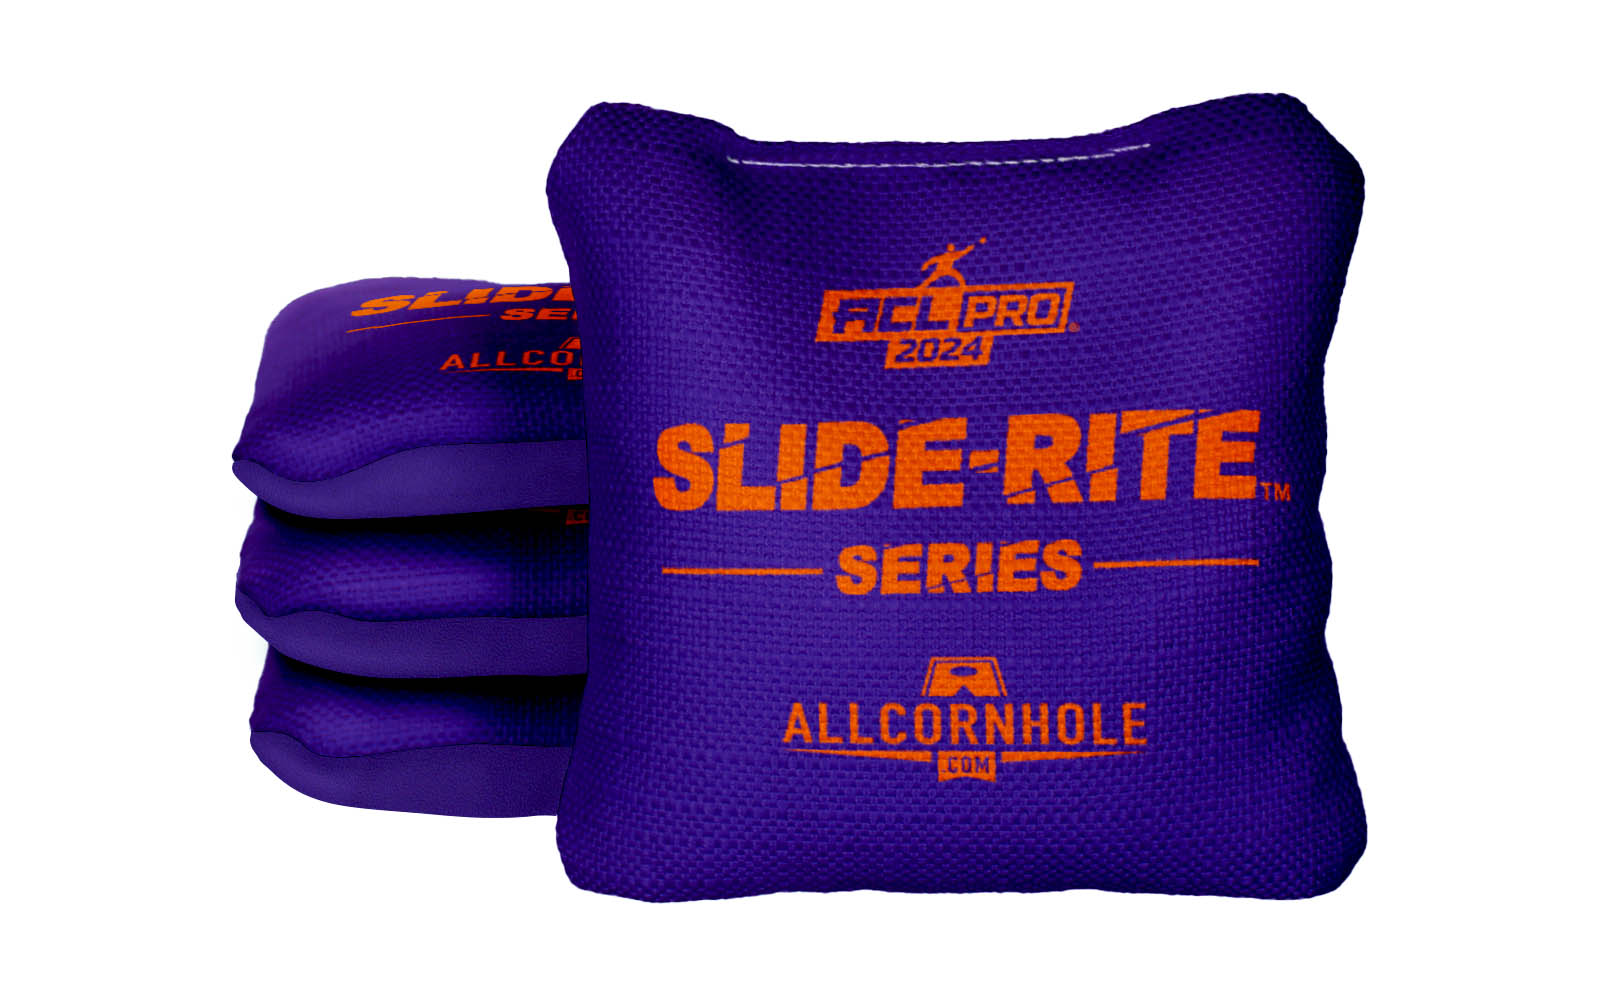 Officially Licensed Collegiate Cornhole Bags - Slide Rite - Set of 4 - Clemson University